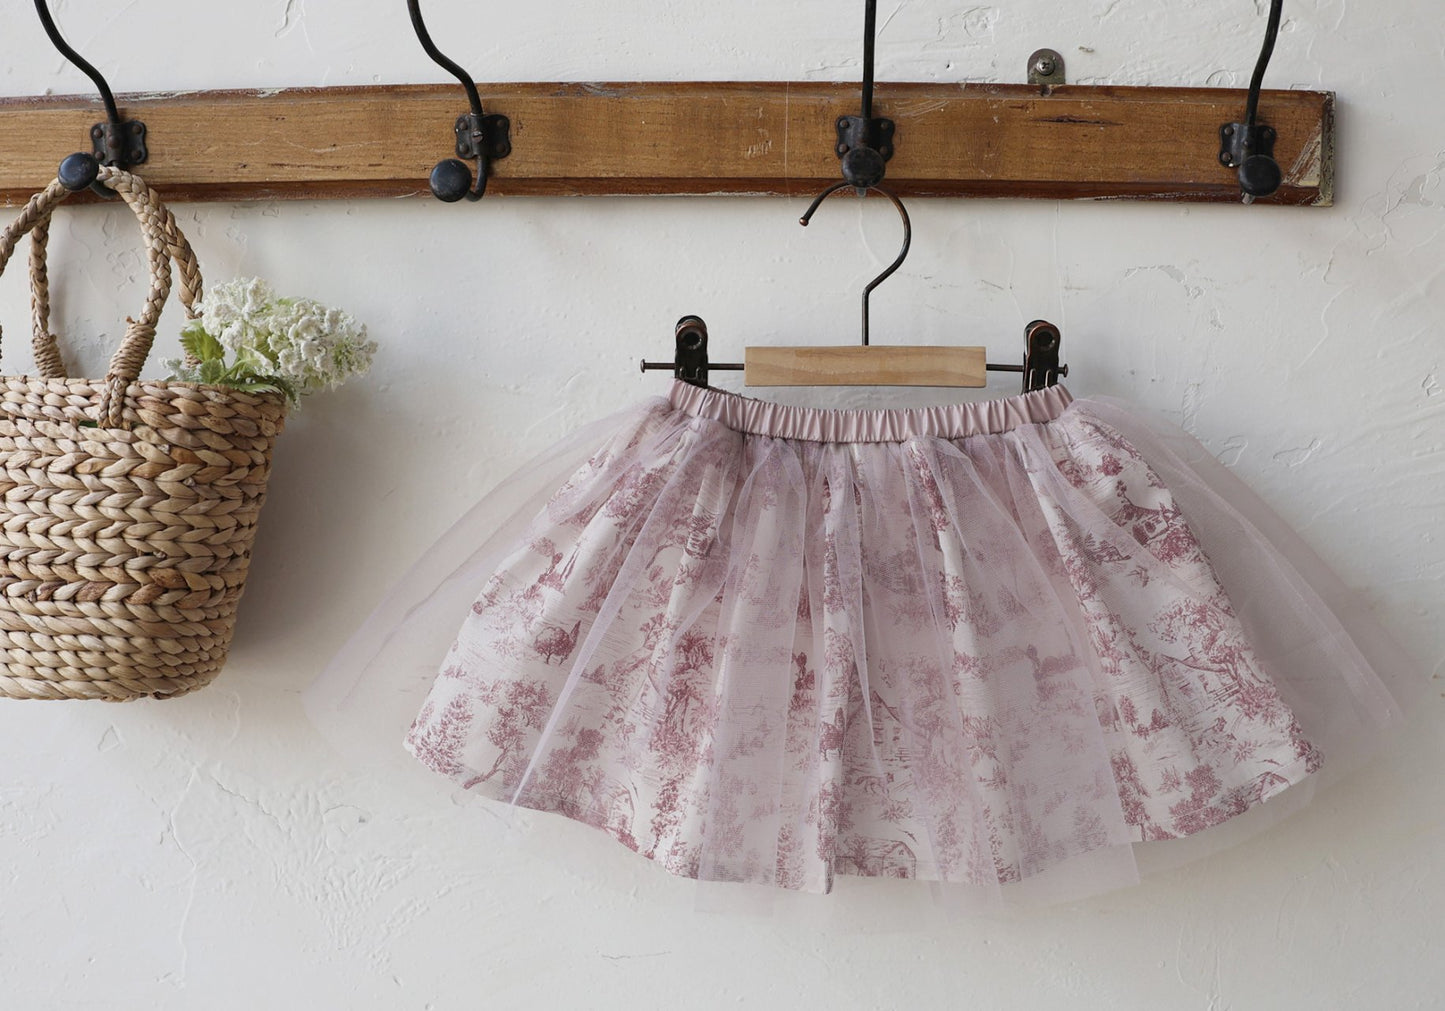 [Flo] Cozett Skirt